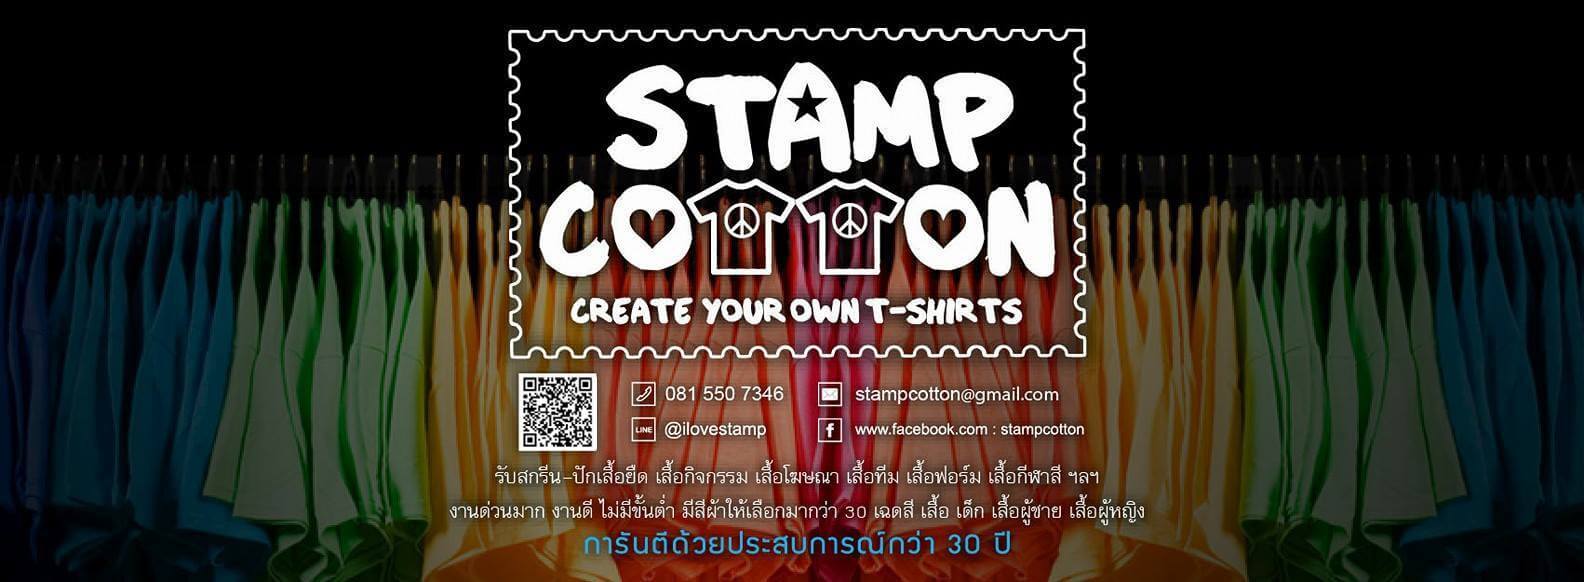 Stamp Cotton โรงงานผลิตเสื้อยืดเสื้อโปโล, เสื้อยืด,เสื้อคอกลม,เสื้อคอวี